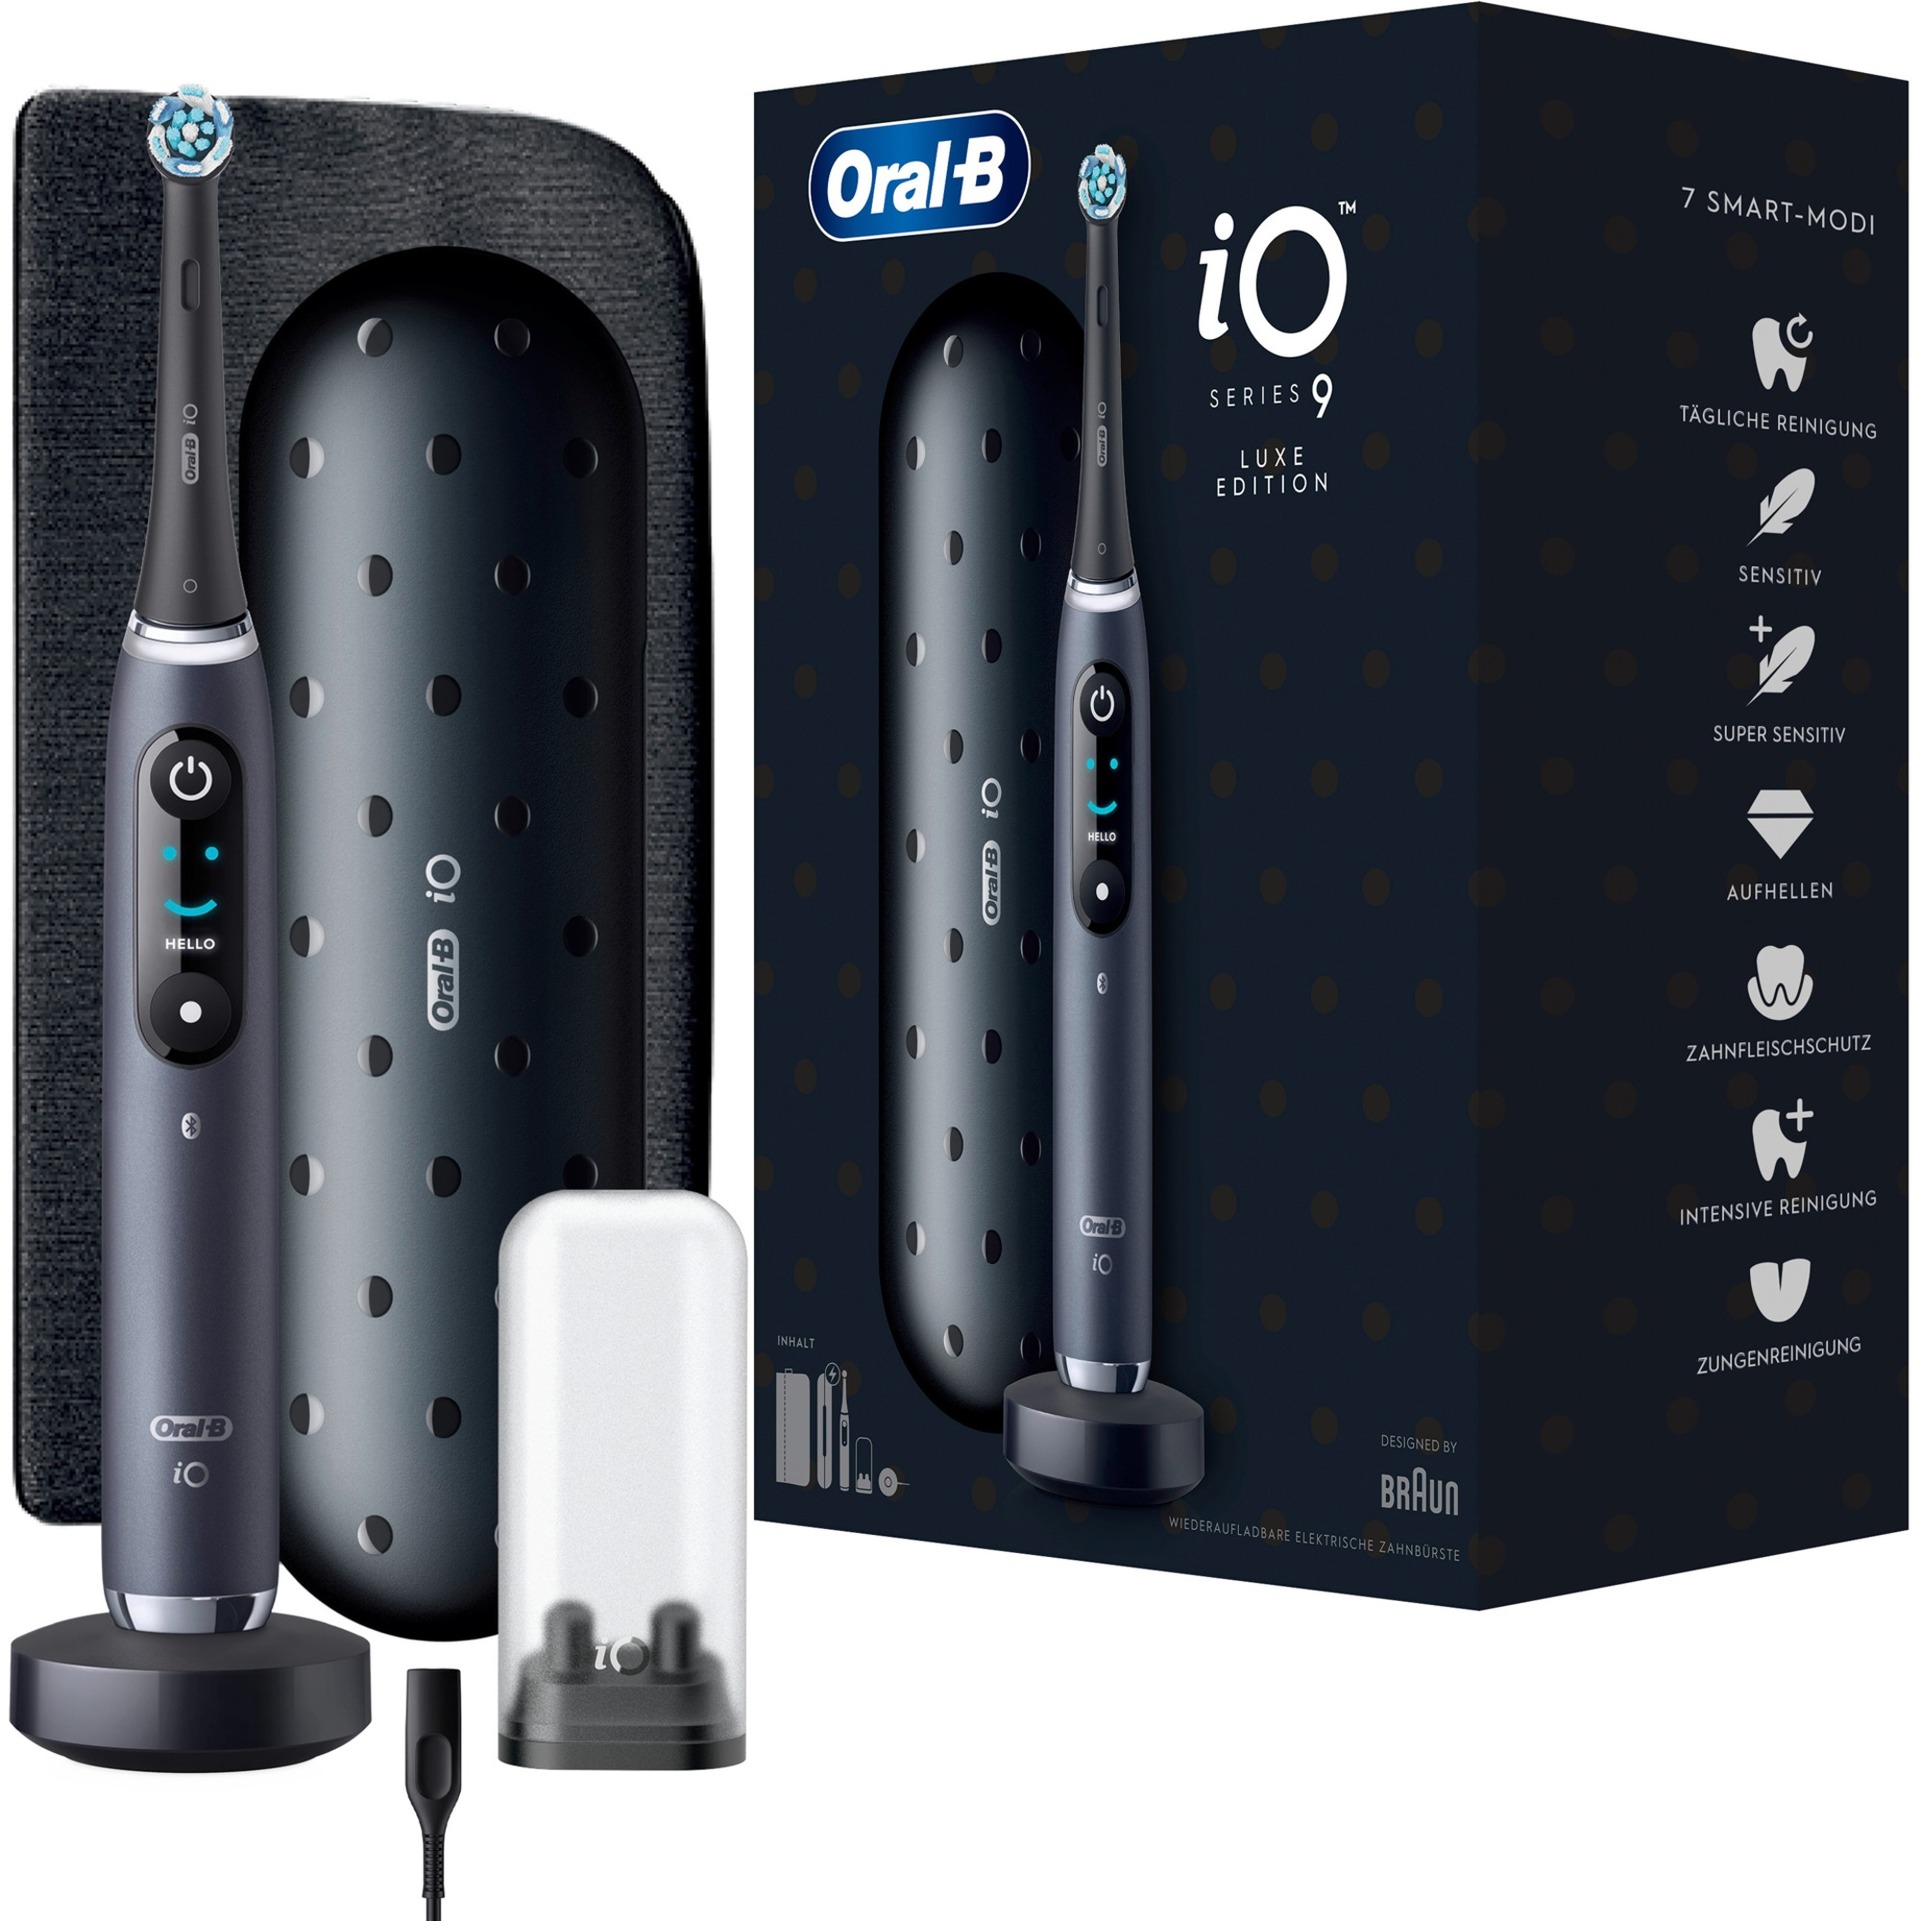 Oral-B iO 9 Luxe Edition Elektrische Zahnbürste, Magnet-Technologie, 7 Putzmodi, 3D-Analyse, Farbdisplay, Lade-Reiseetui & Beauty-Tasche, black onyx